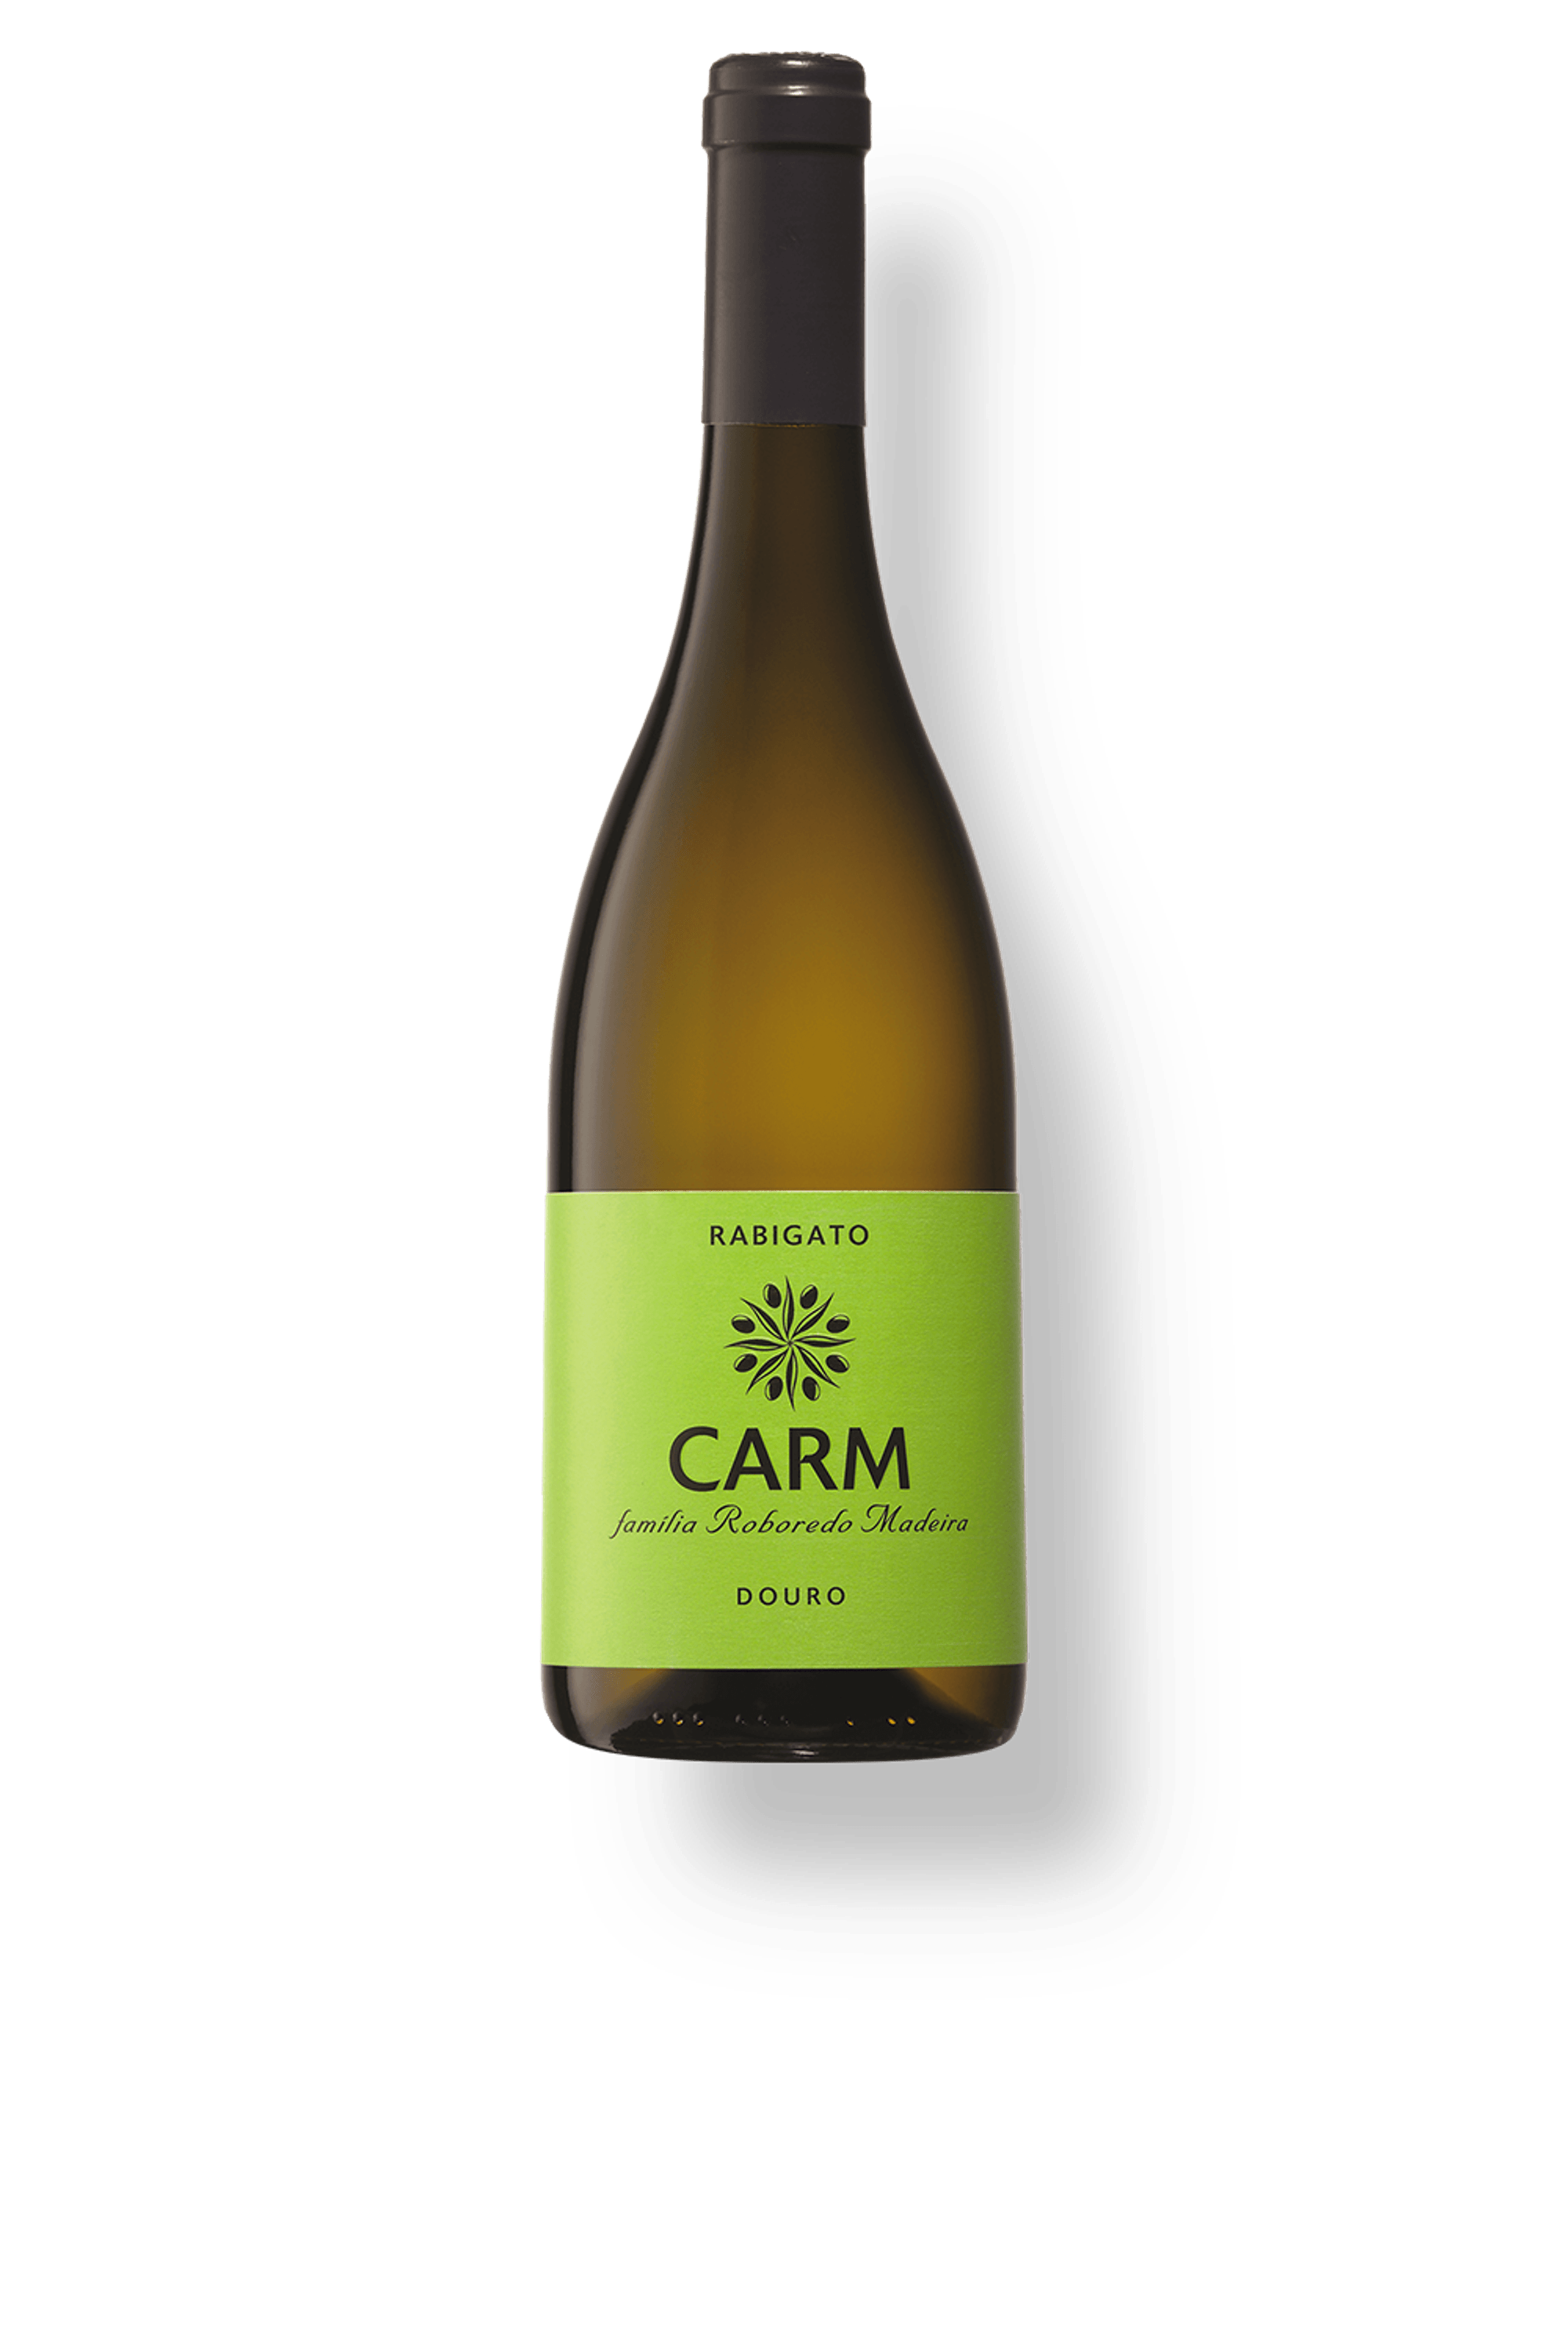 Vinho CARM Rabigato - worldwine